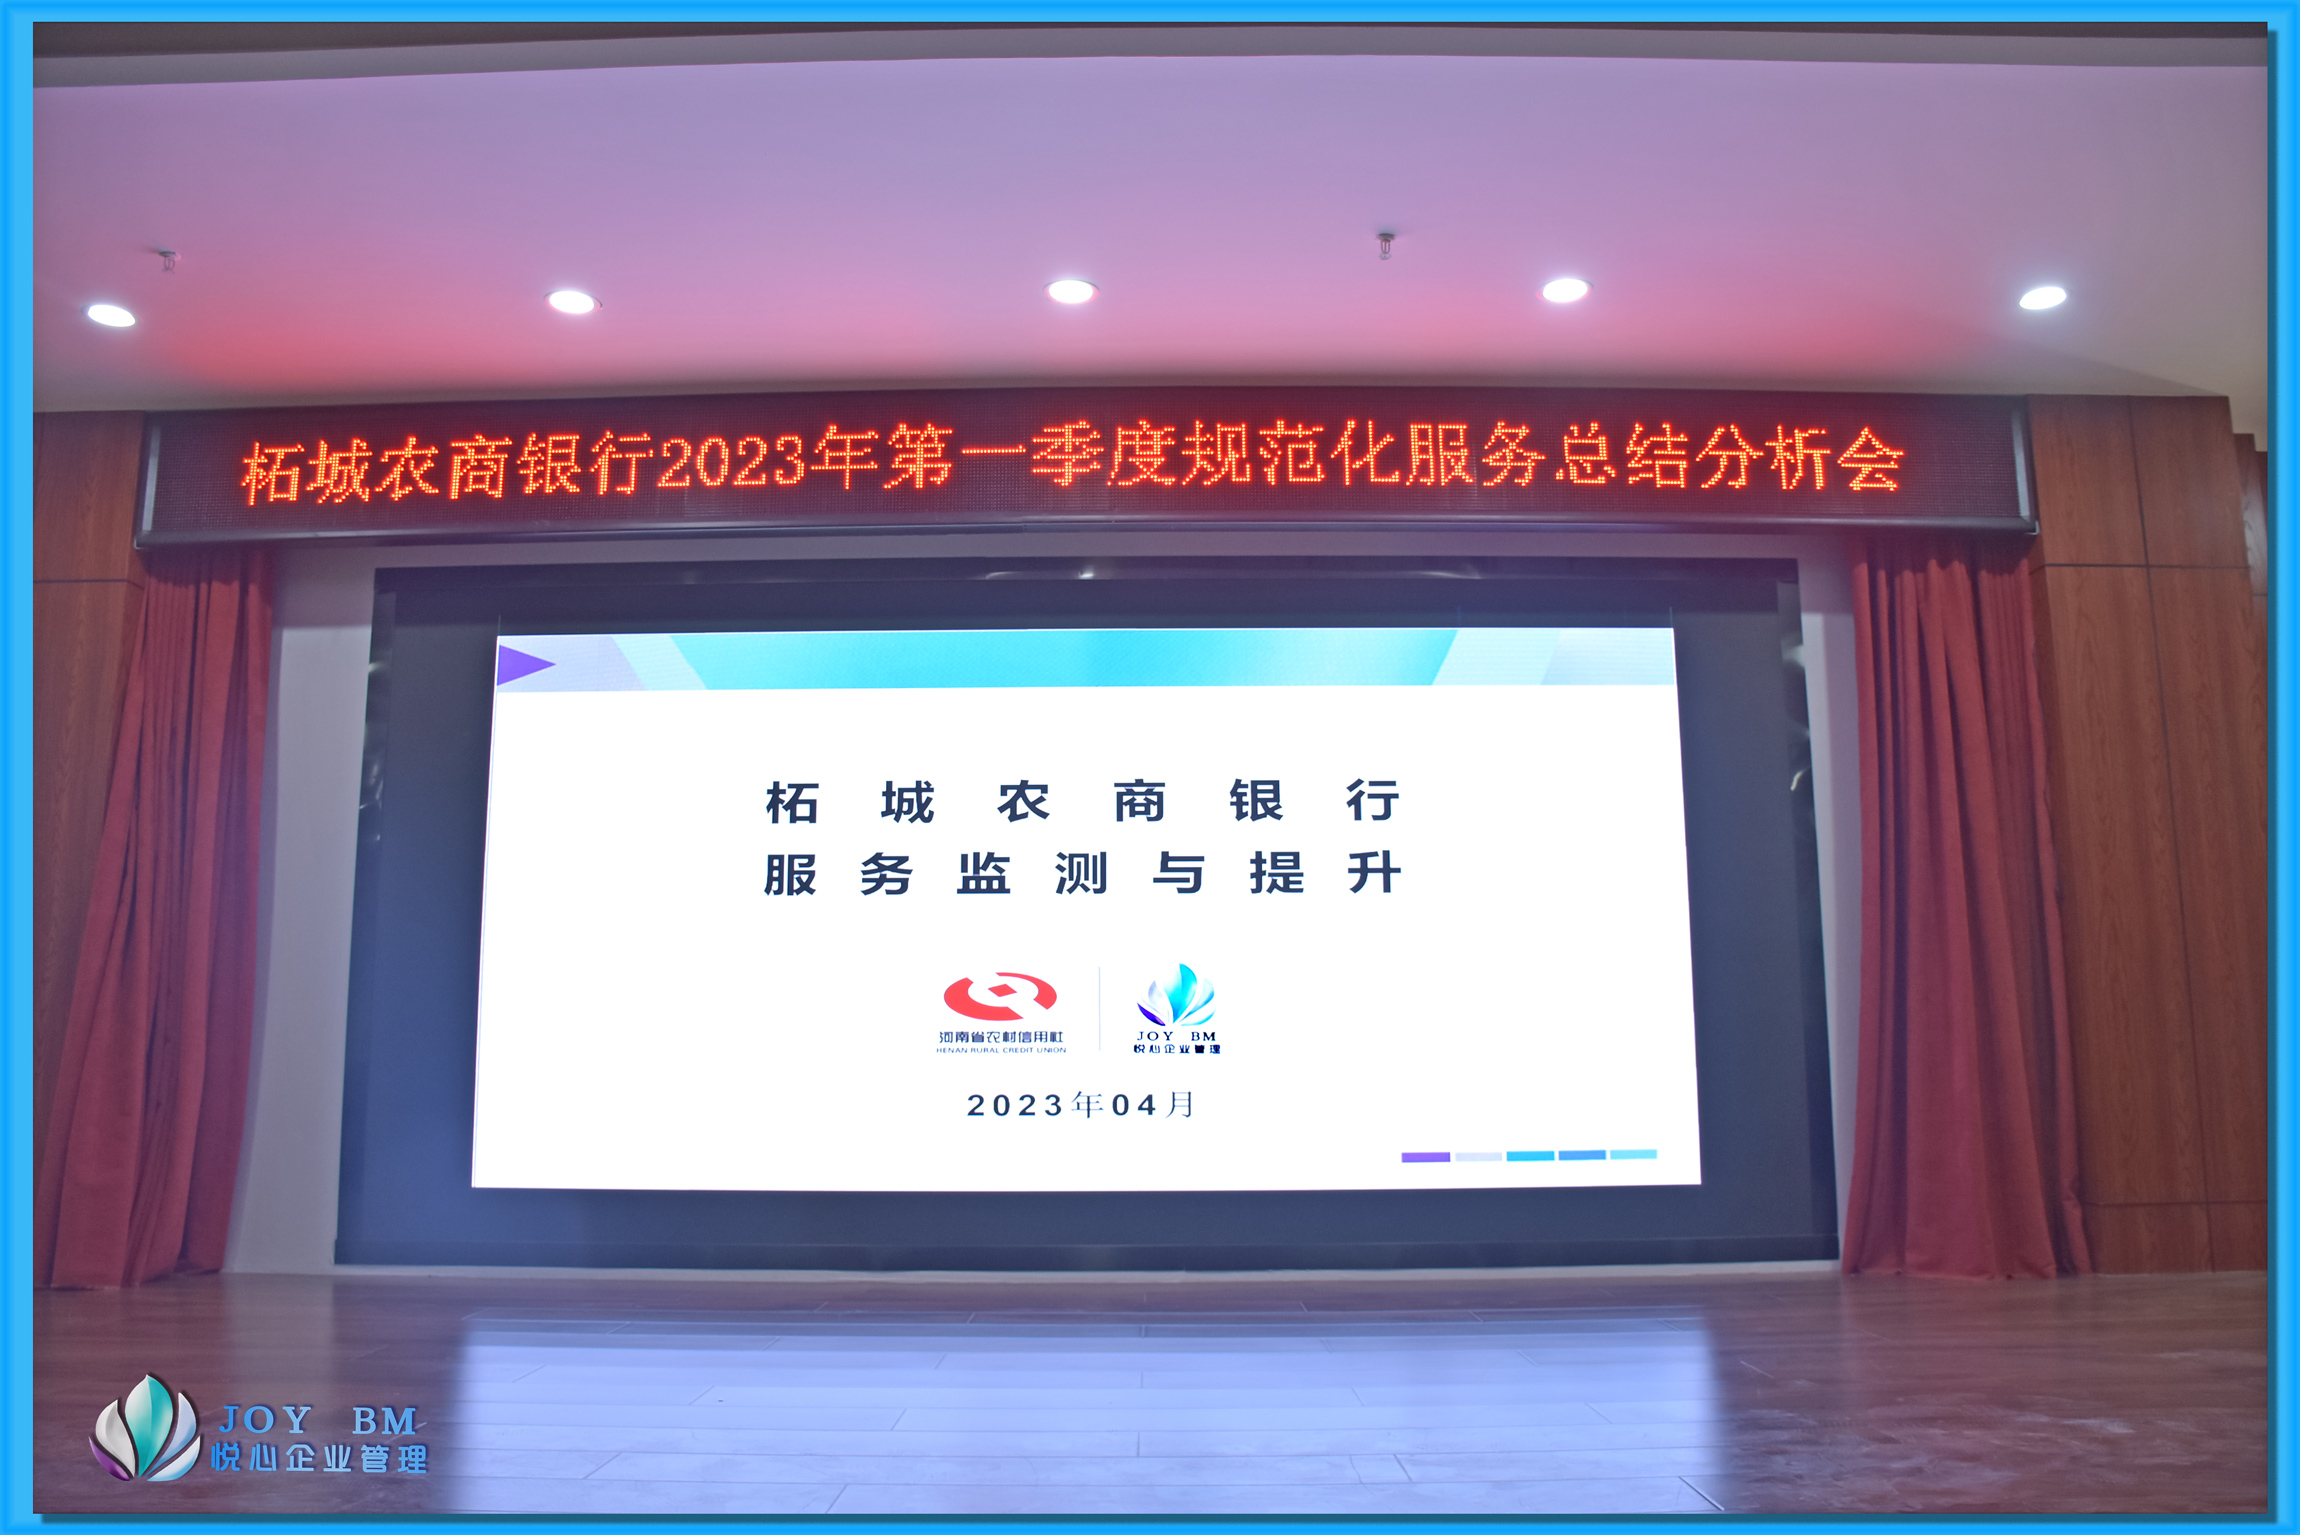 柘城农商银行2023年第一季度规范化服务提升